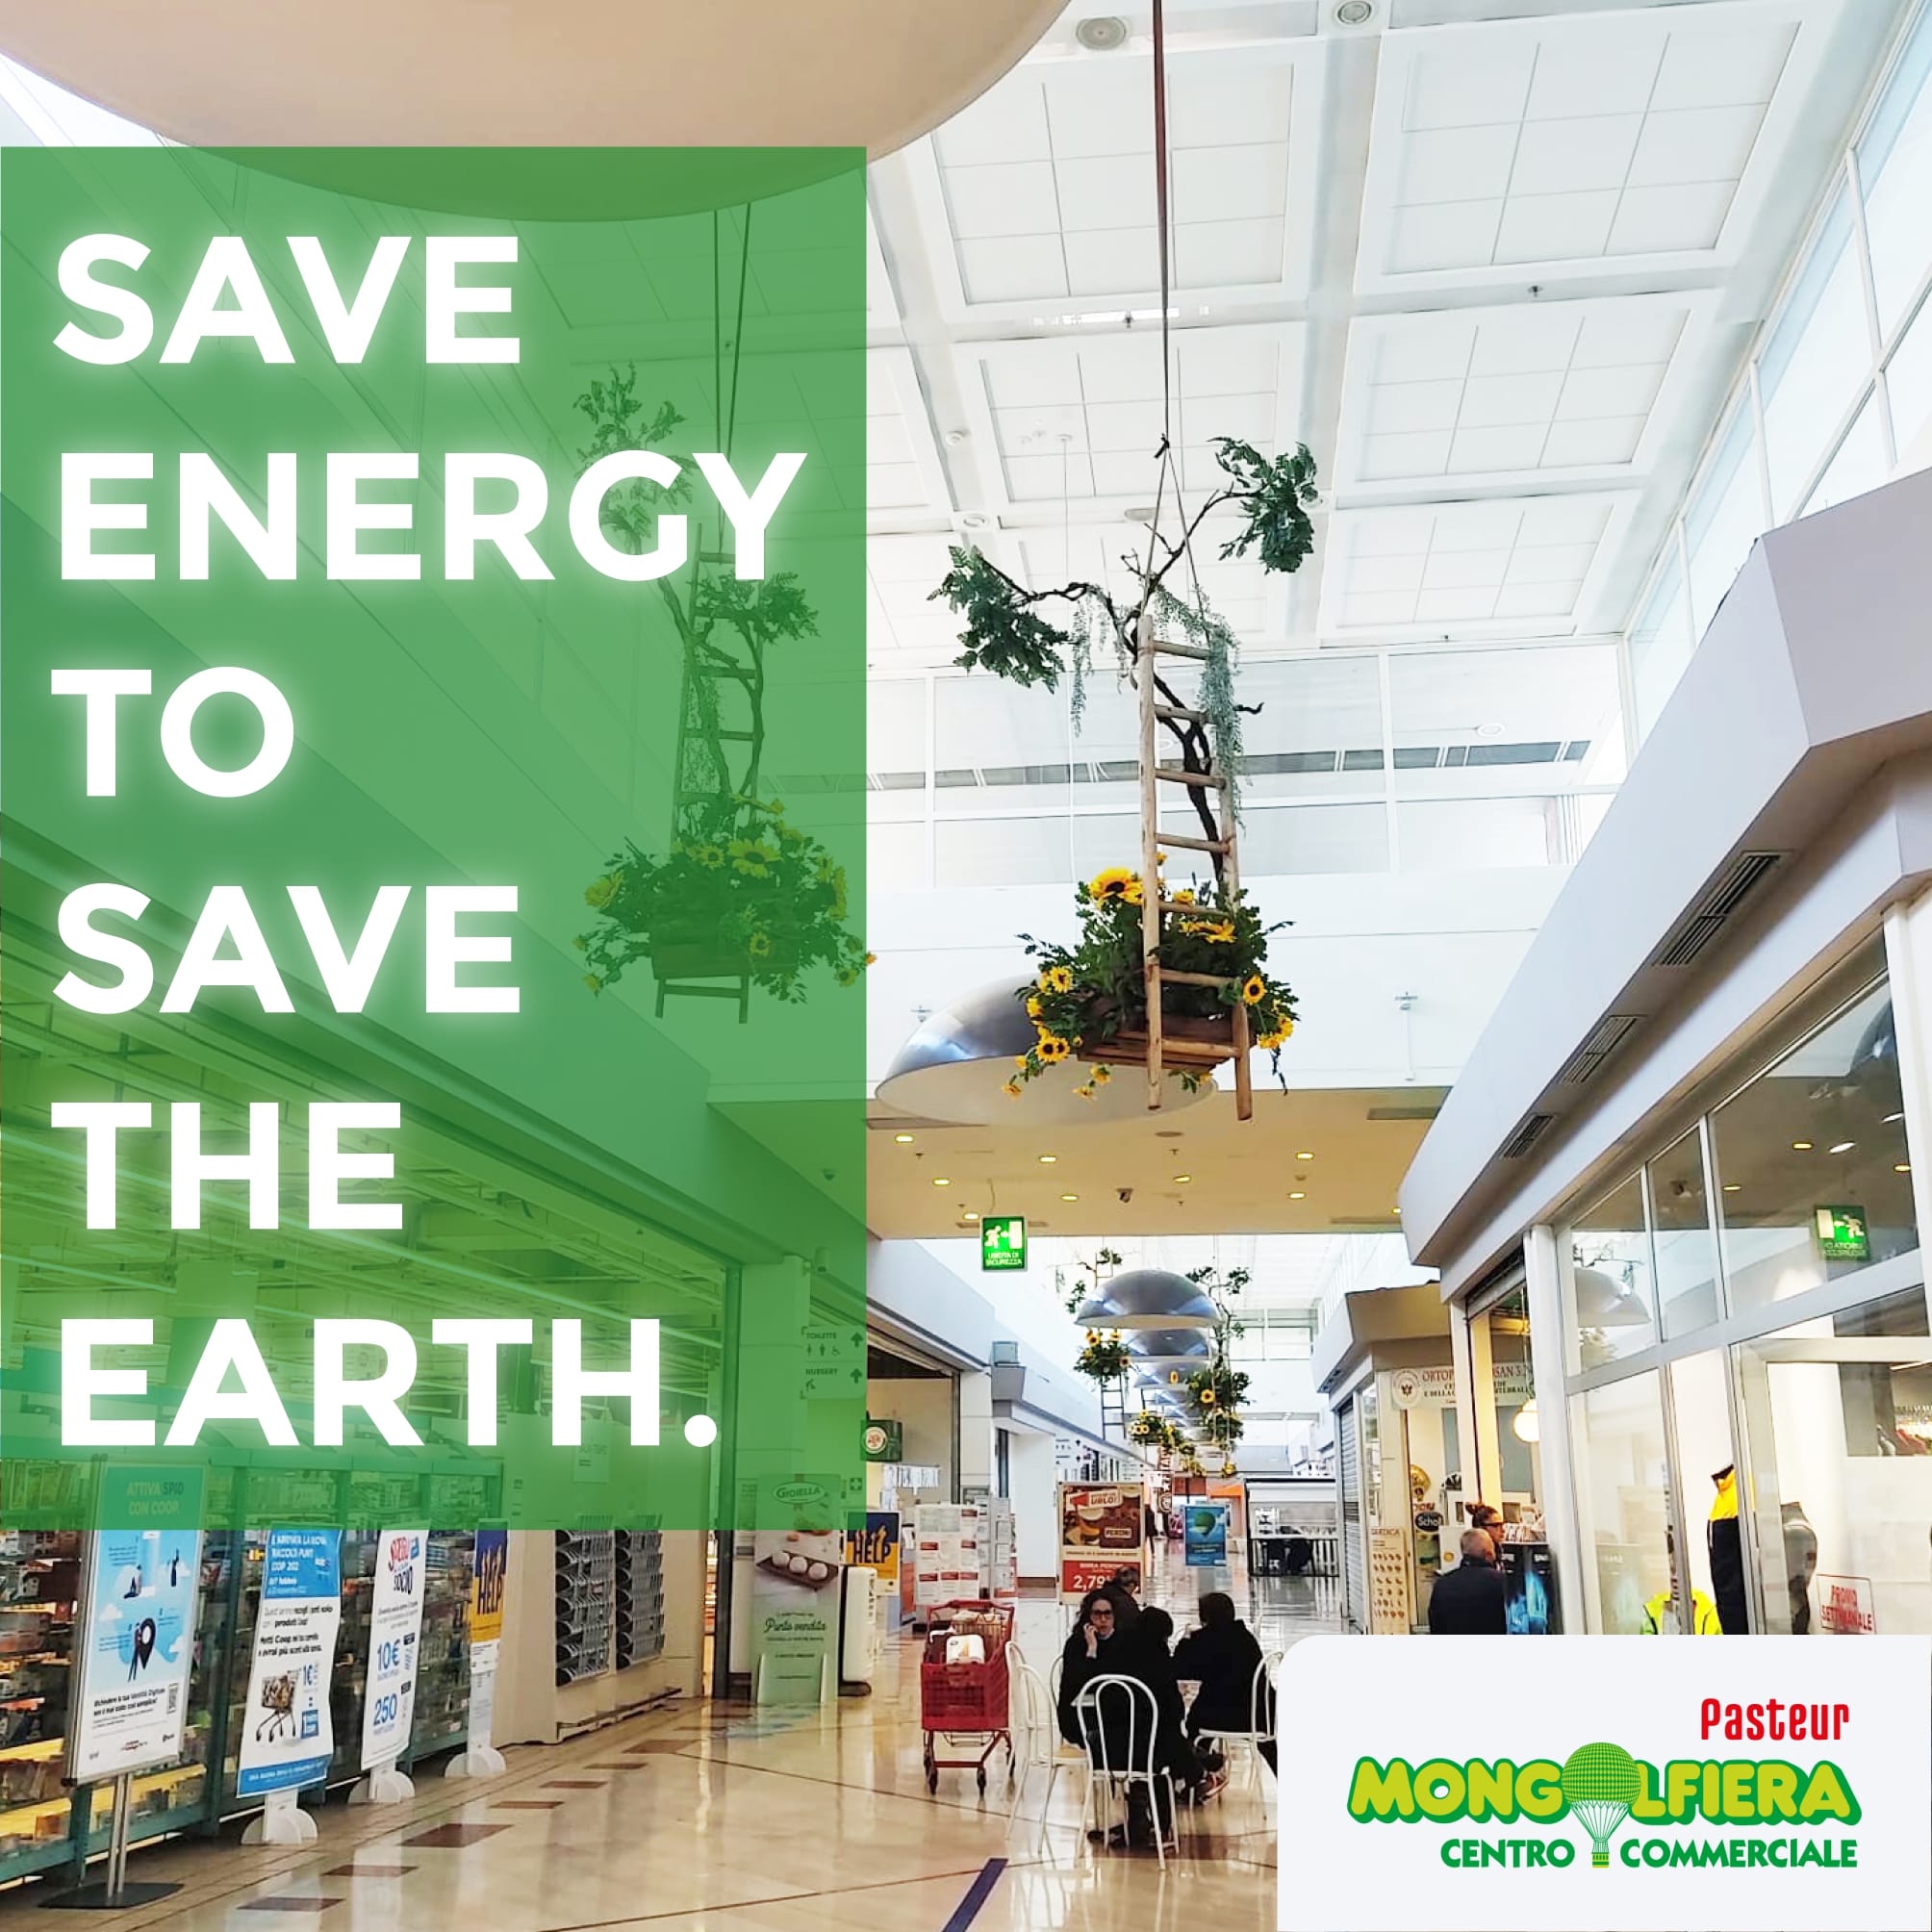 Risparmiamo energia, salviamo il pianeta